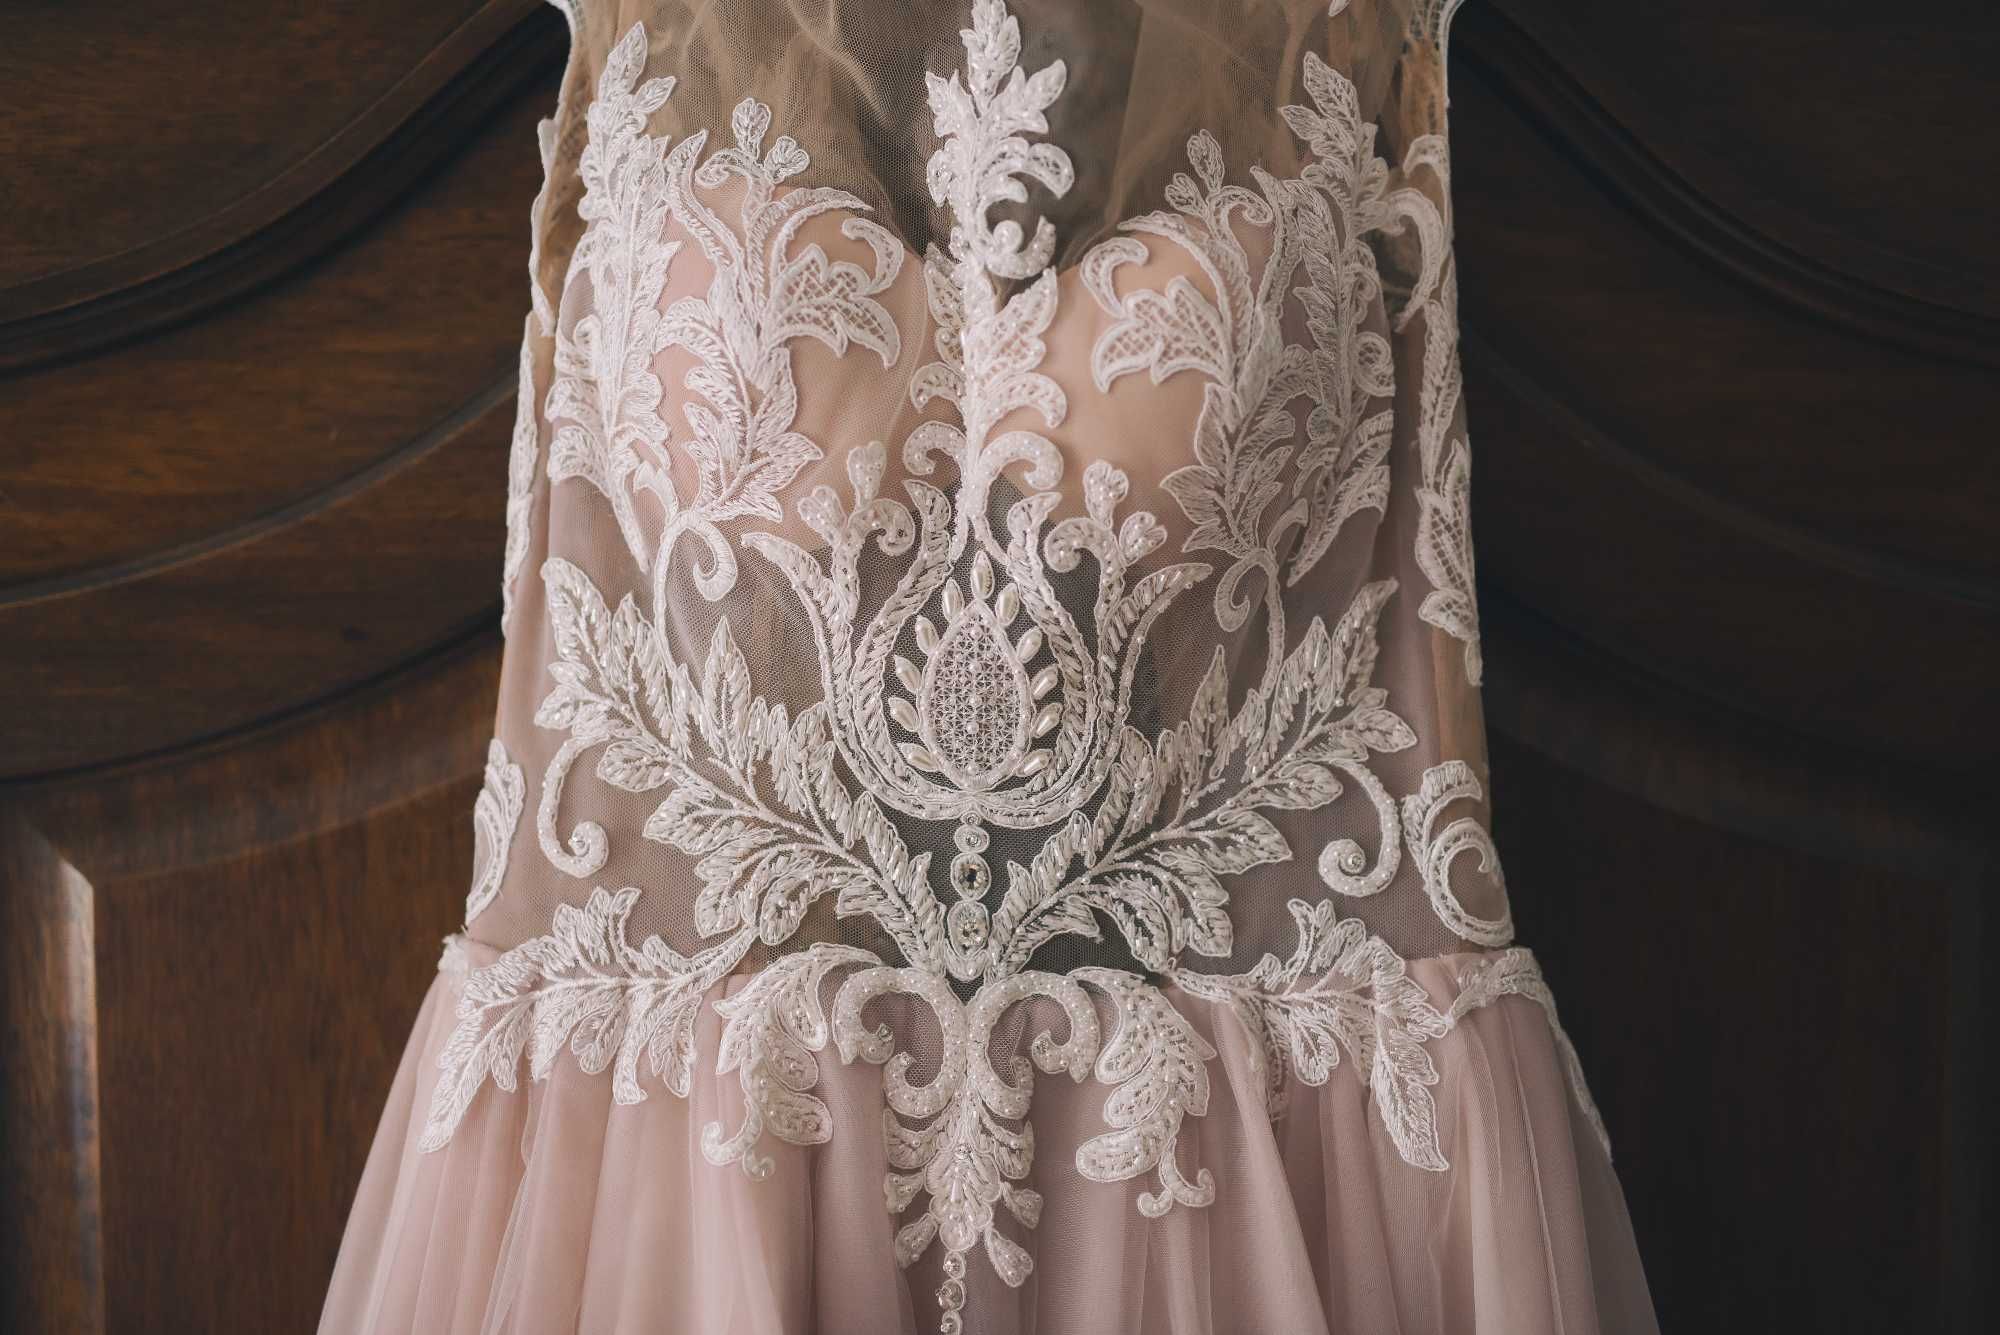 Piękna suknia ślubna tiul koronka xs brudny róż + długi welon gratis